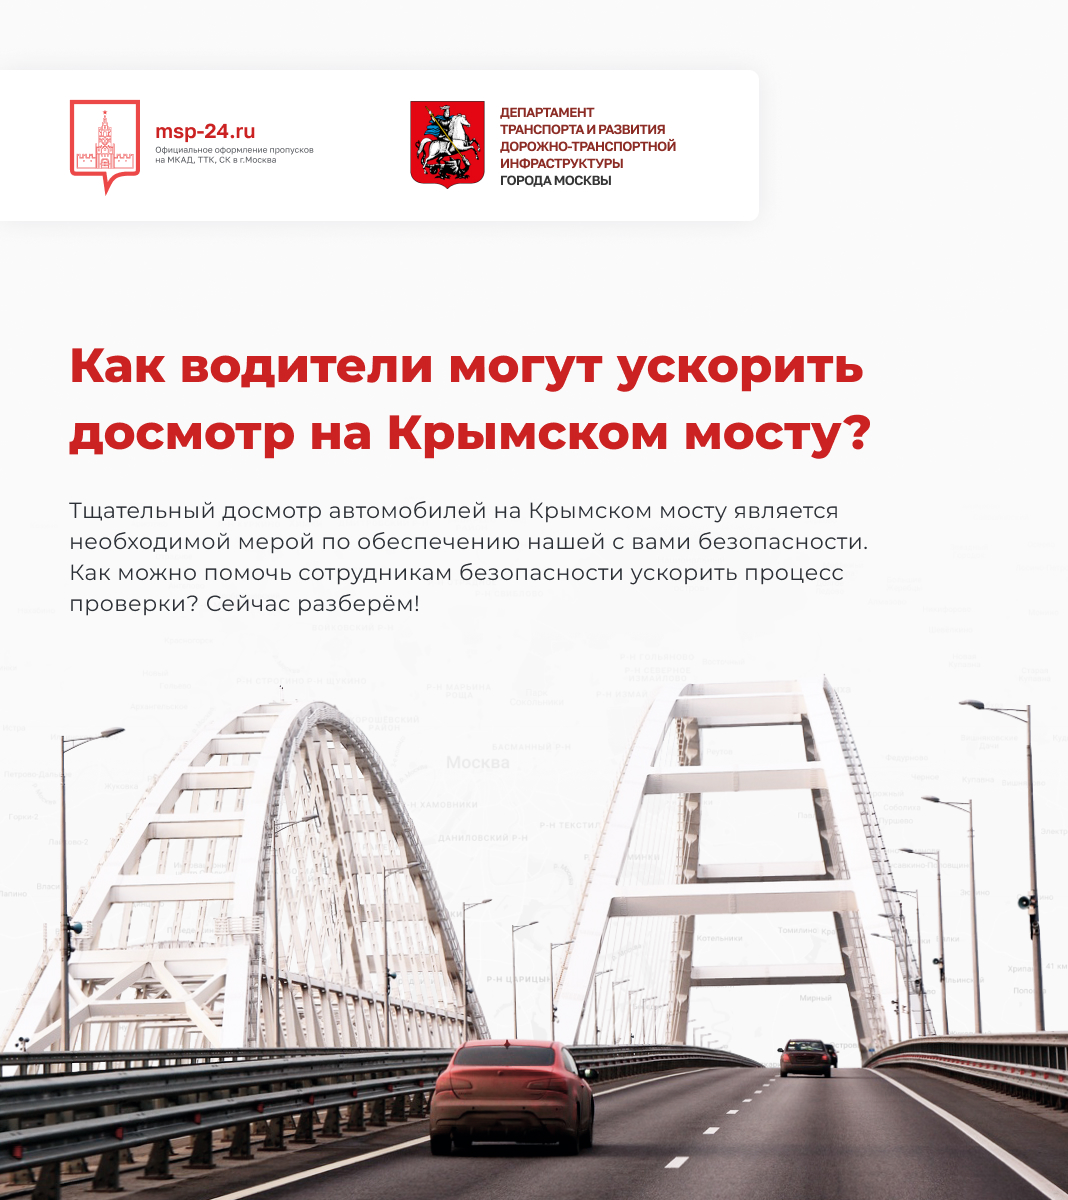 Как водители могут ускорить досмотр на Крымском мосту?